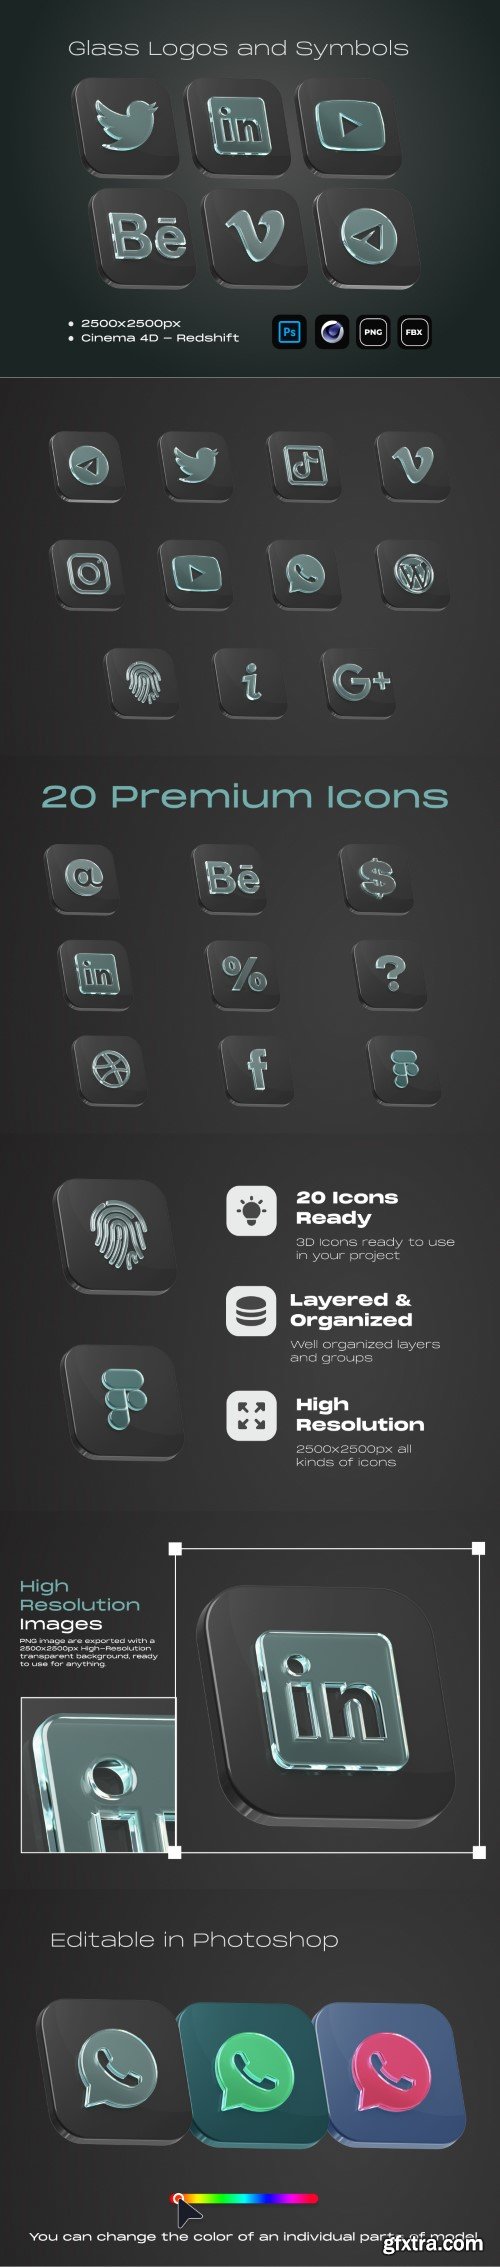 UI8 - Glass Logos and Symbols